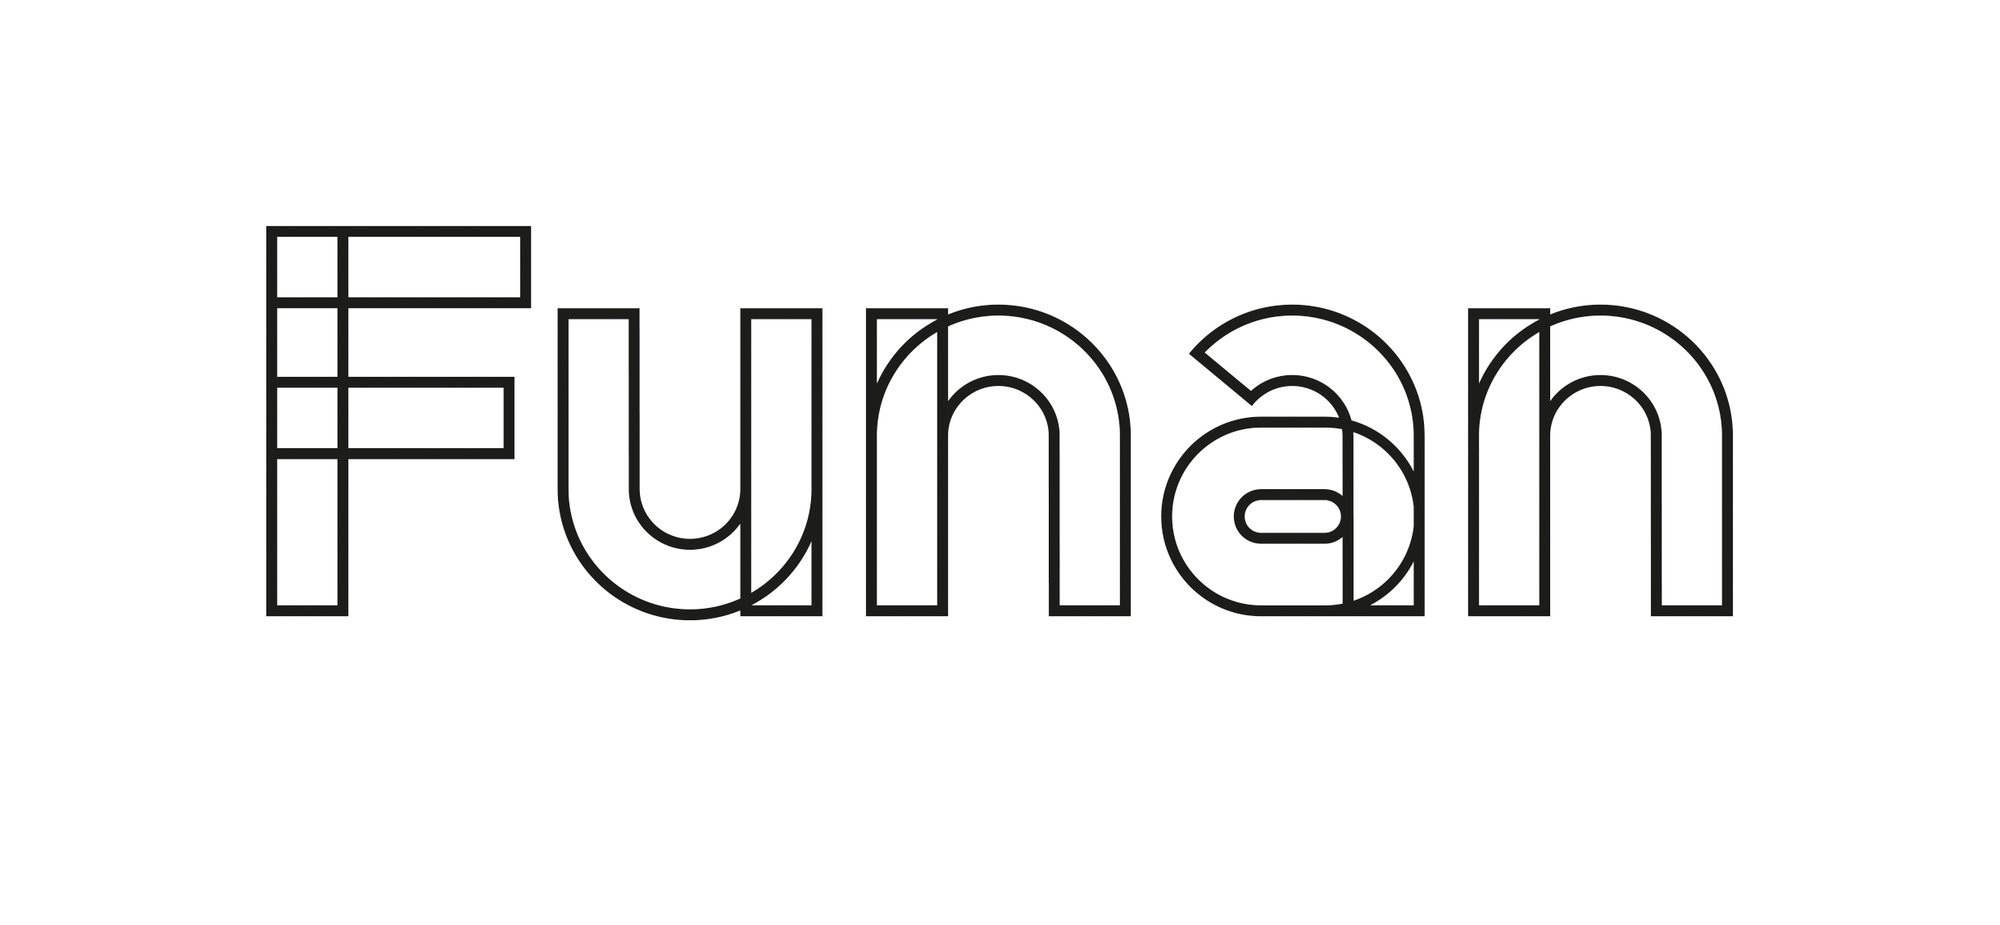 Funan - Master Logo